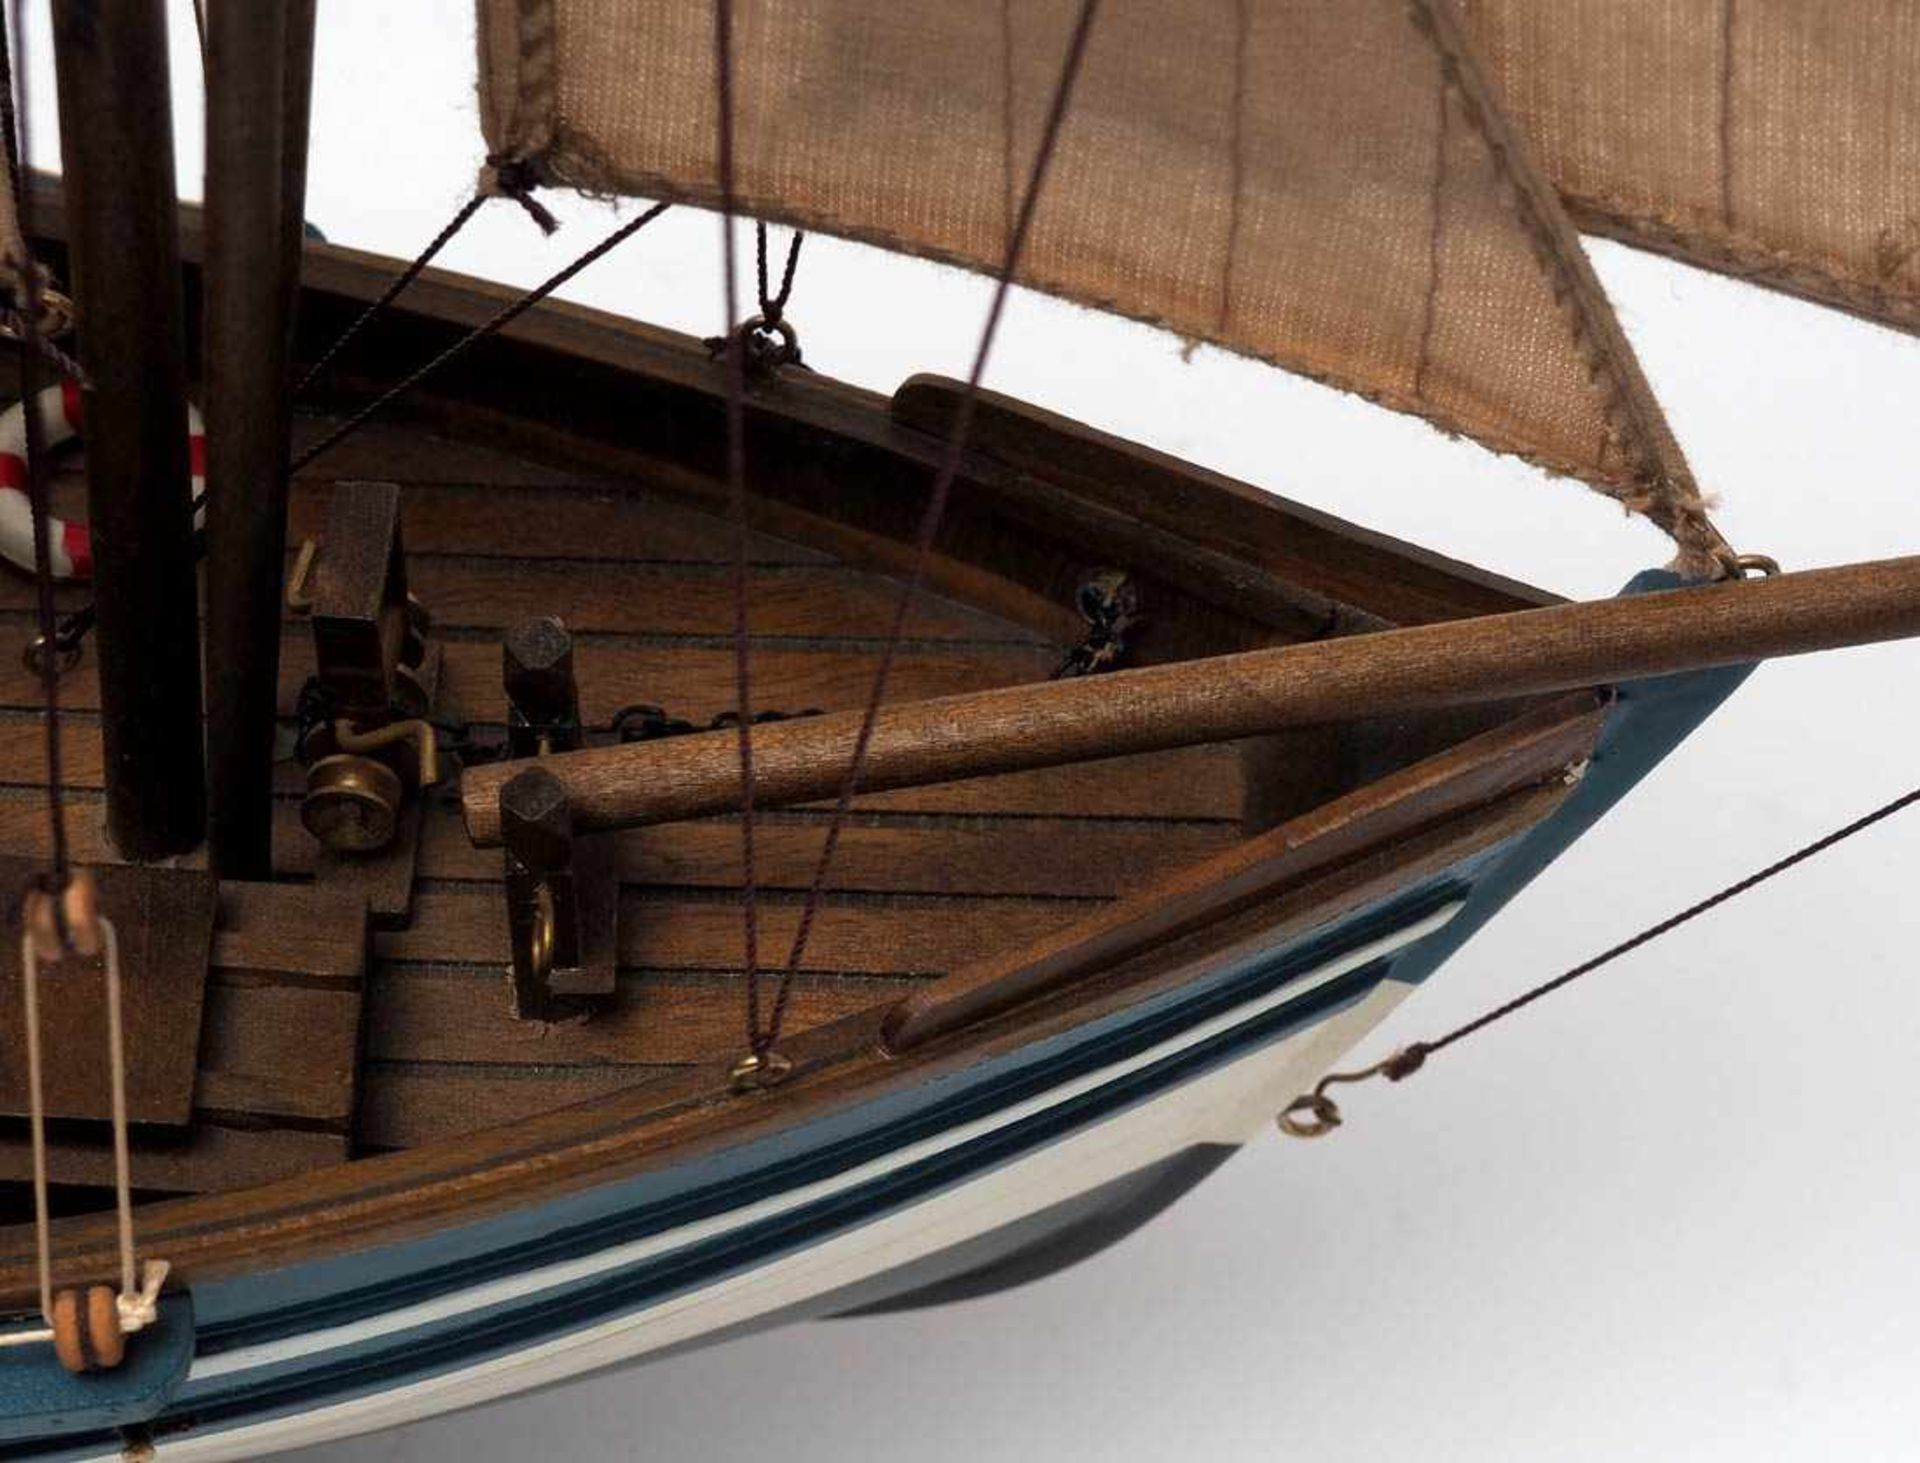 Modell eines FischerbootesHolz, farbig bemalt. H.56, L.52cm. - Bild 2 aus 3